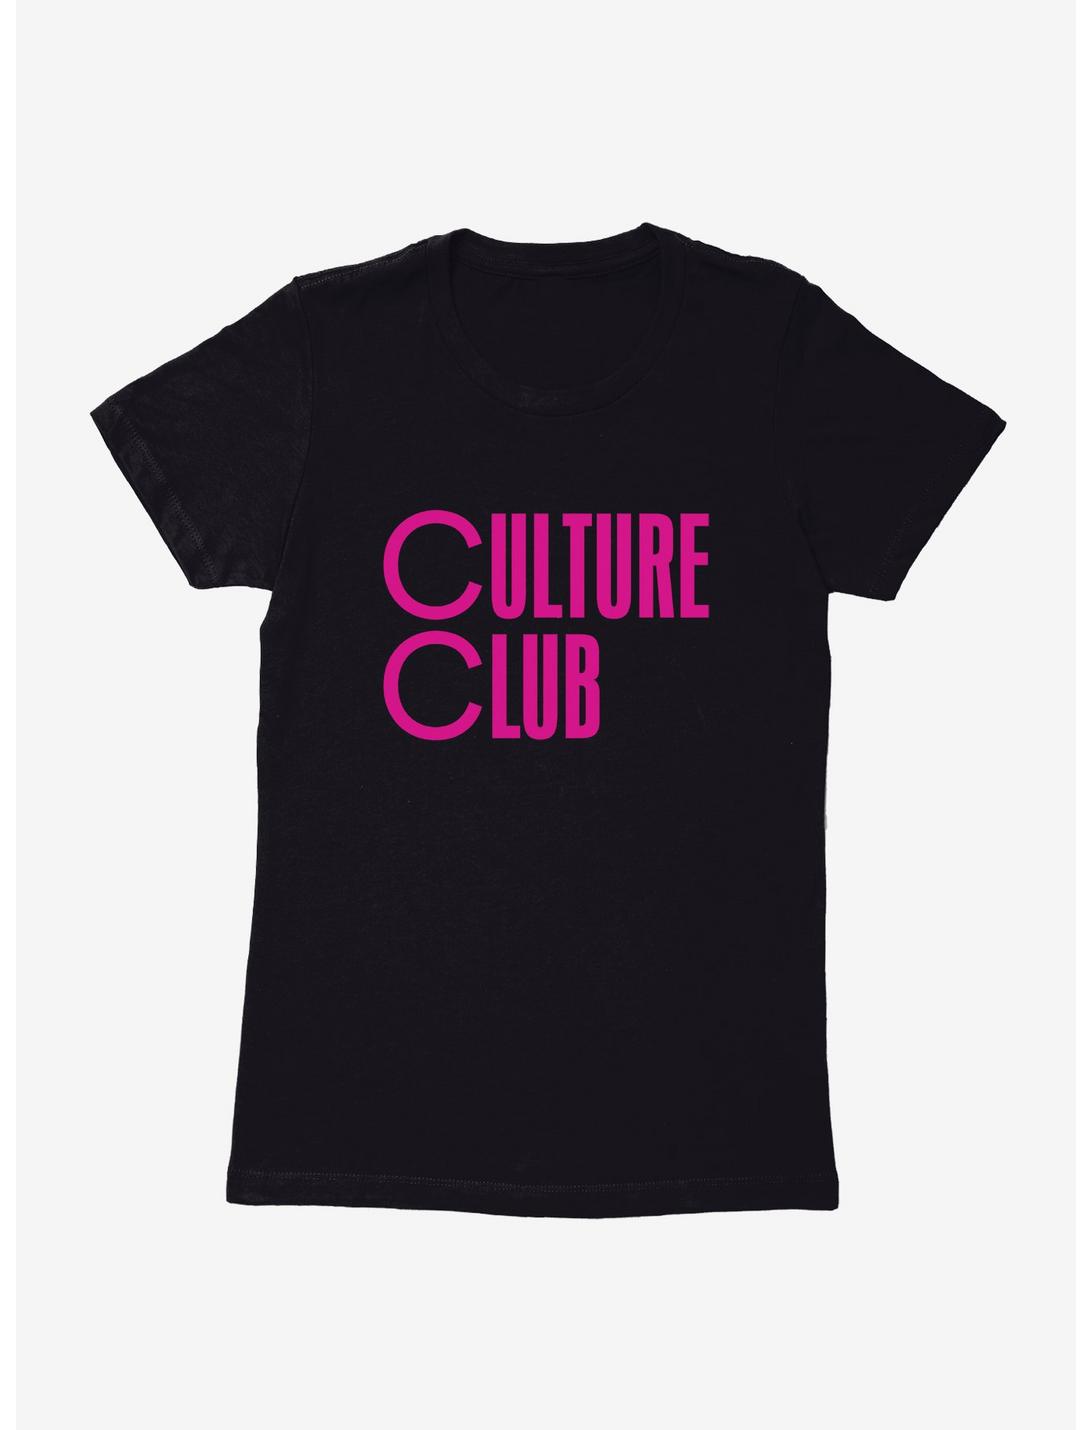 Boy George & Culture Club Culture Club Font Womens T-Shirt, , hi-res